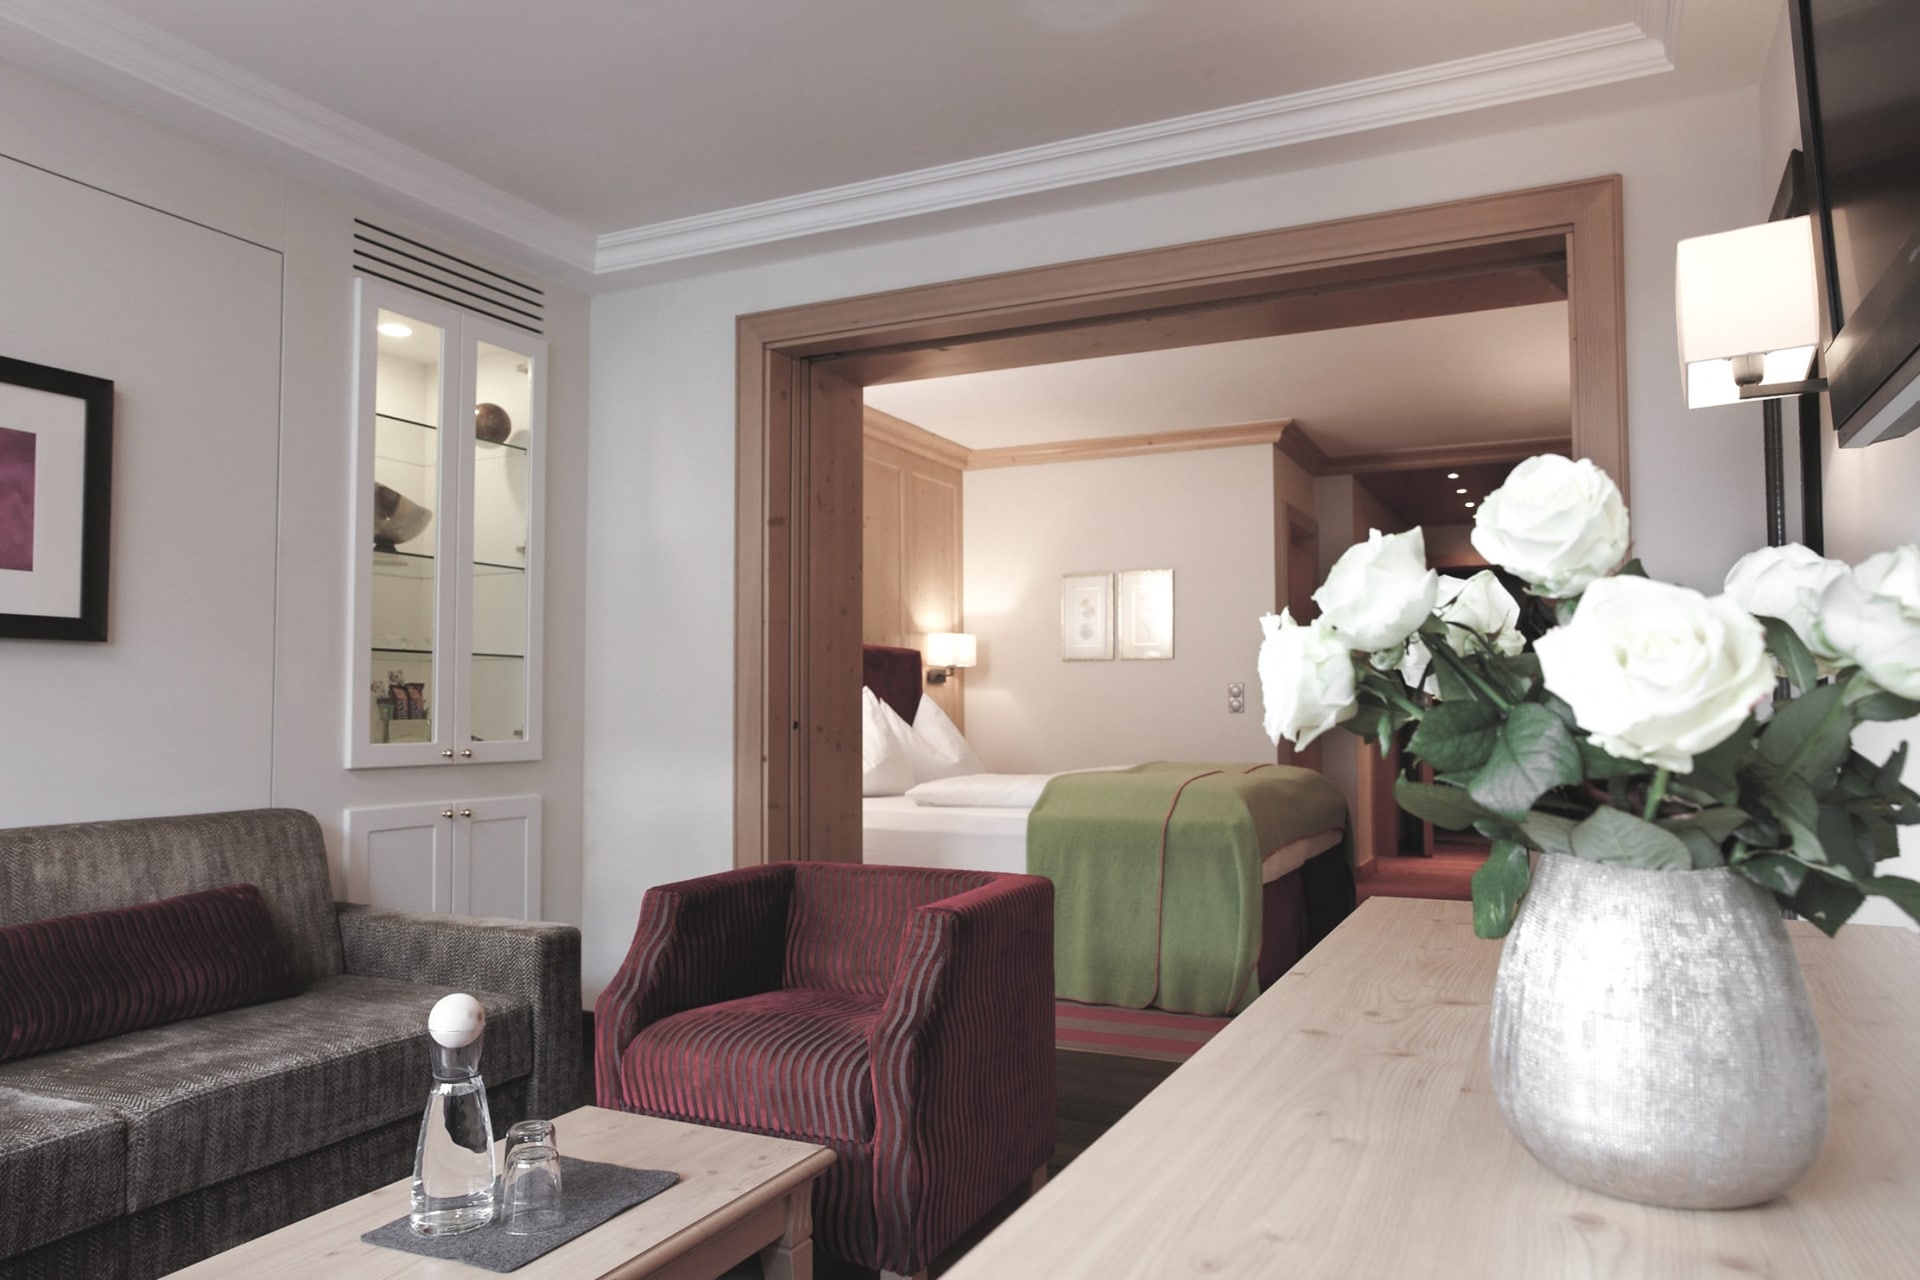 Elegantes und gemütliches Interieur einer Hotelsuite mit einem geschmackvoll eingerichteten Wohnbereich, der in ein bequemes Schlafzimmer übergeht, akzentuiert mit frischen weißen Rosen auf einem Holztisch für einen Hauch von Klasse.